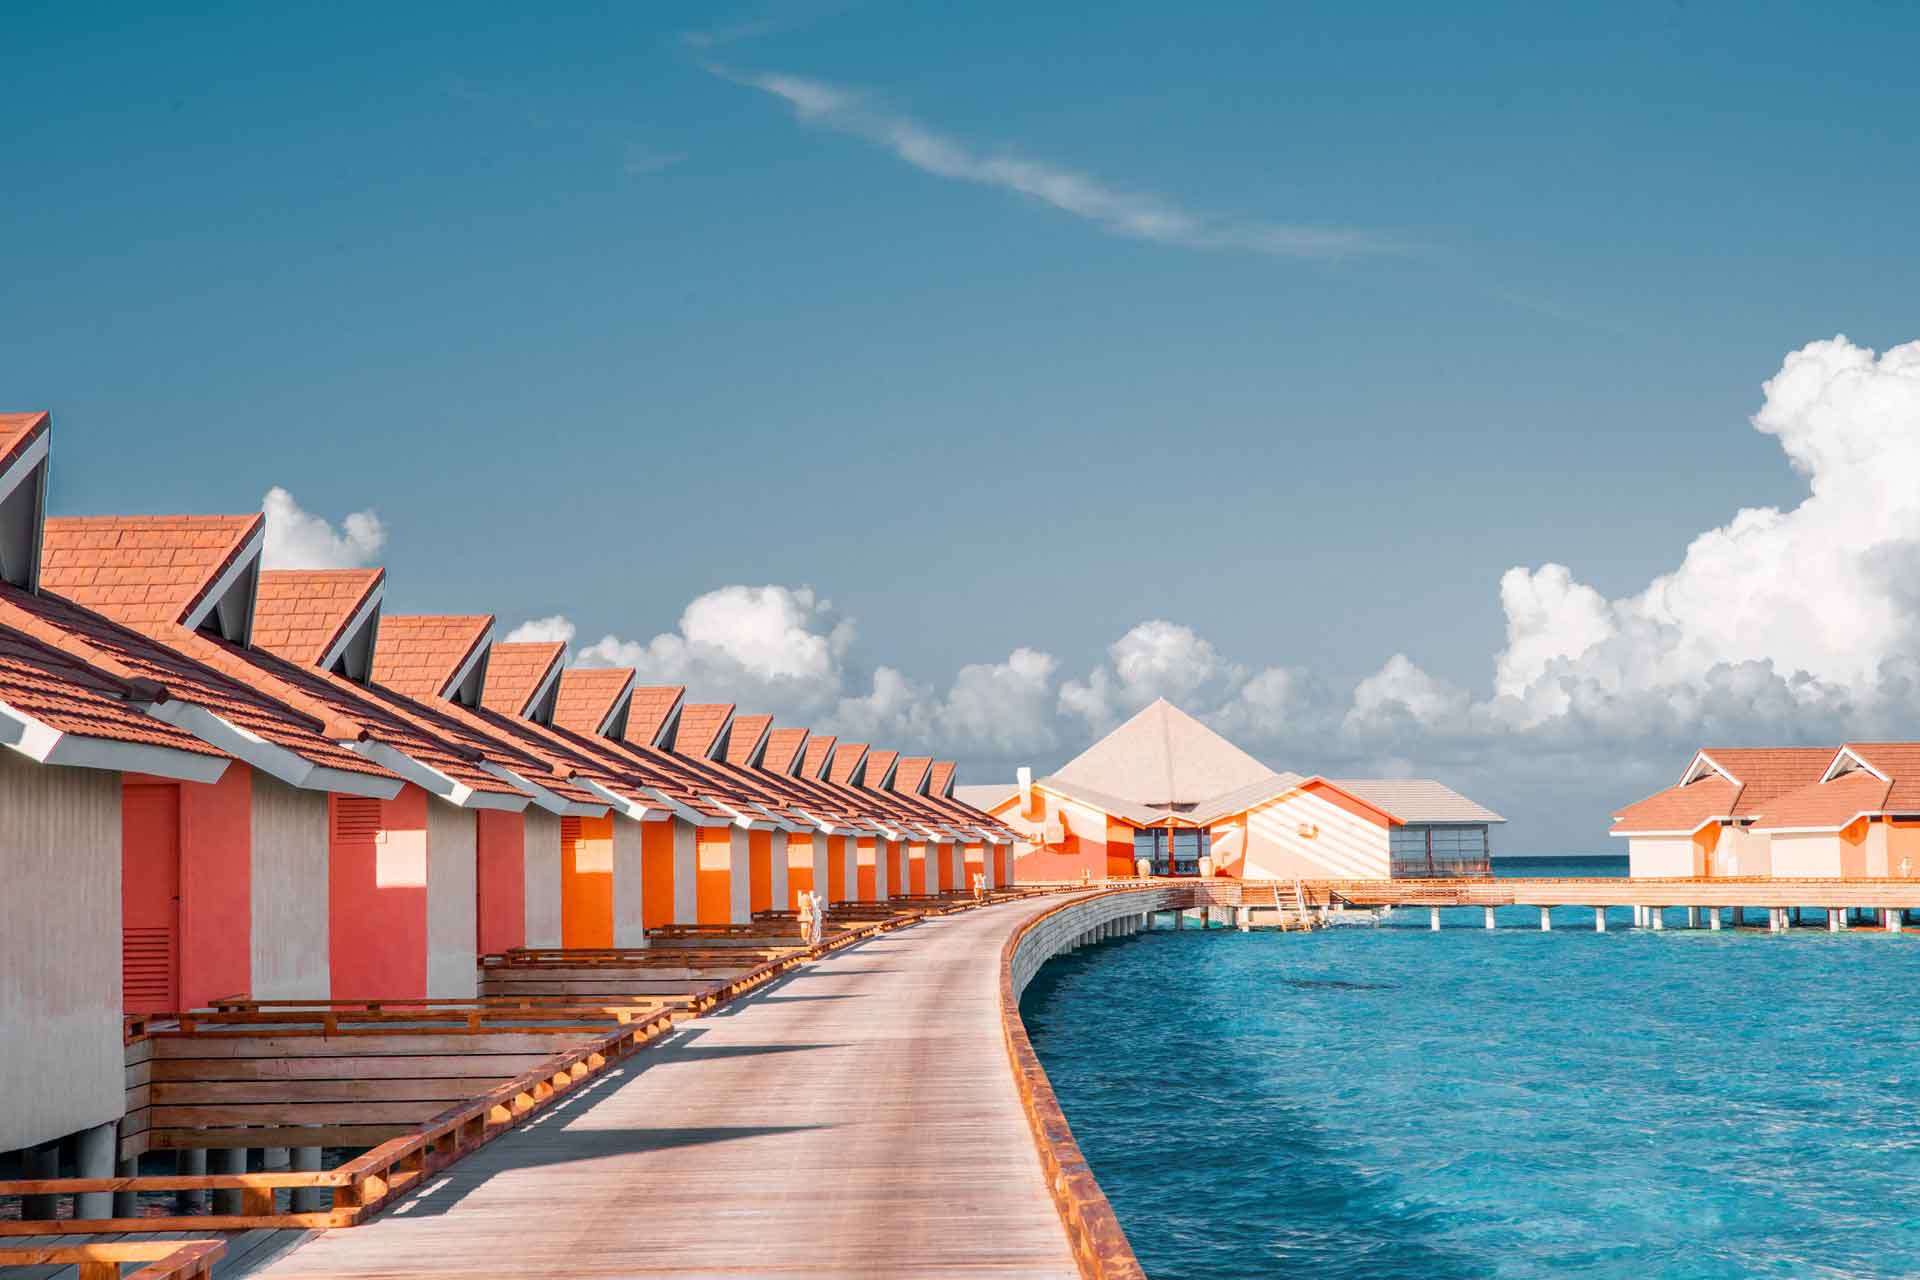 Rayyu Maldives resort